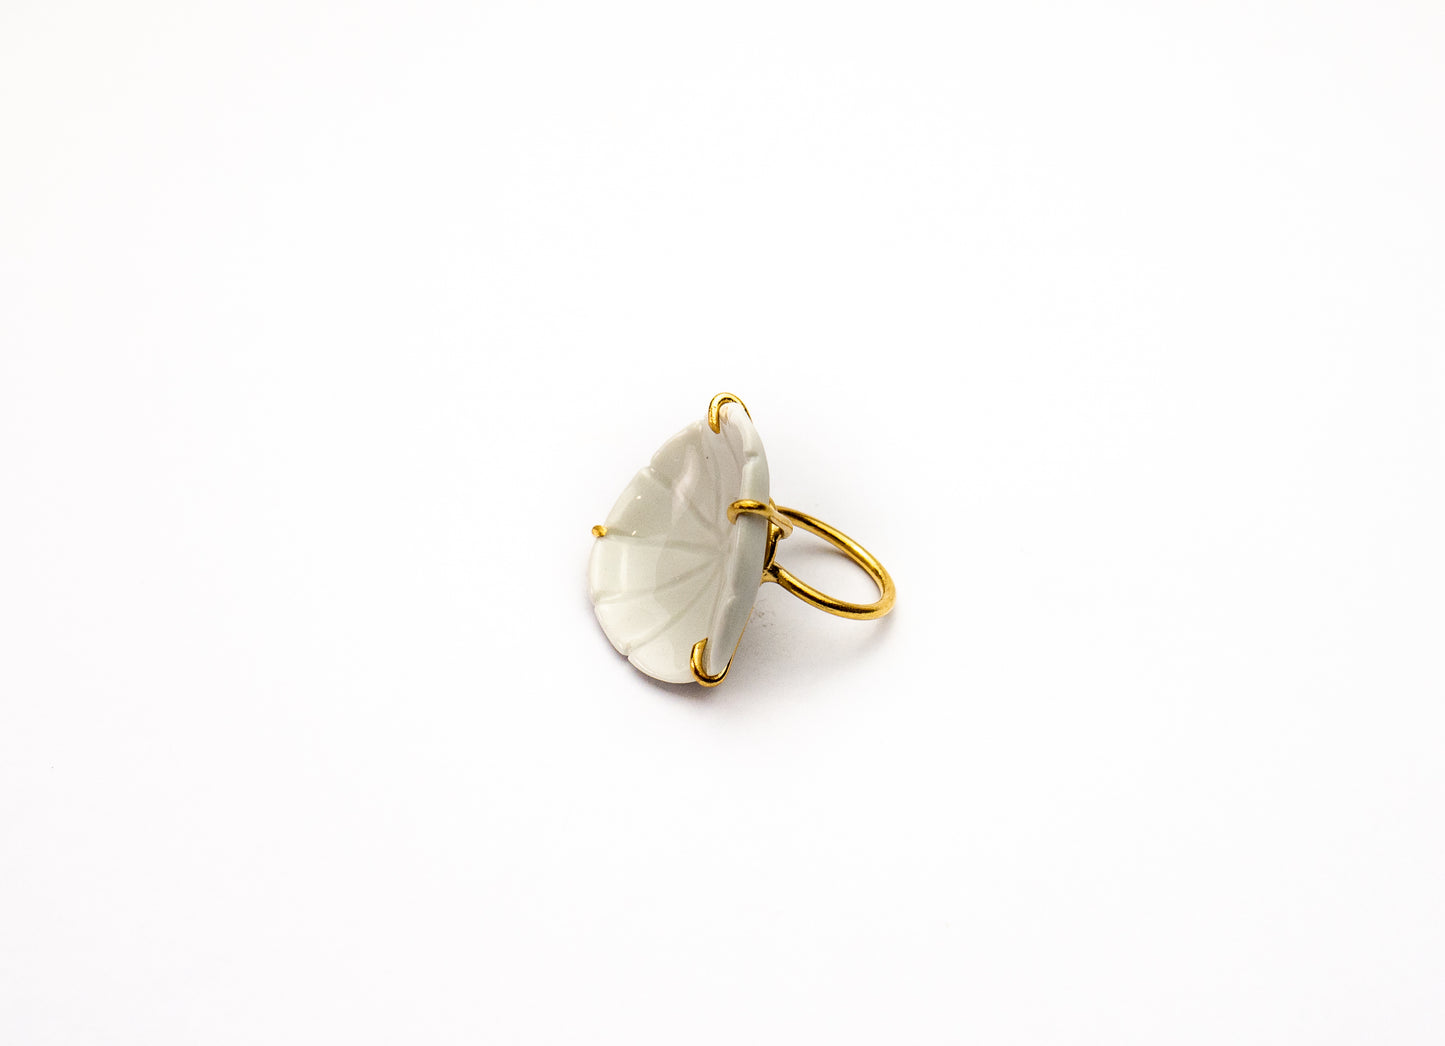 Δαχτυλίδι με λουλούδι λευκής πορσελάνης.